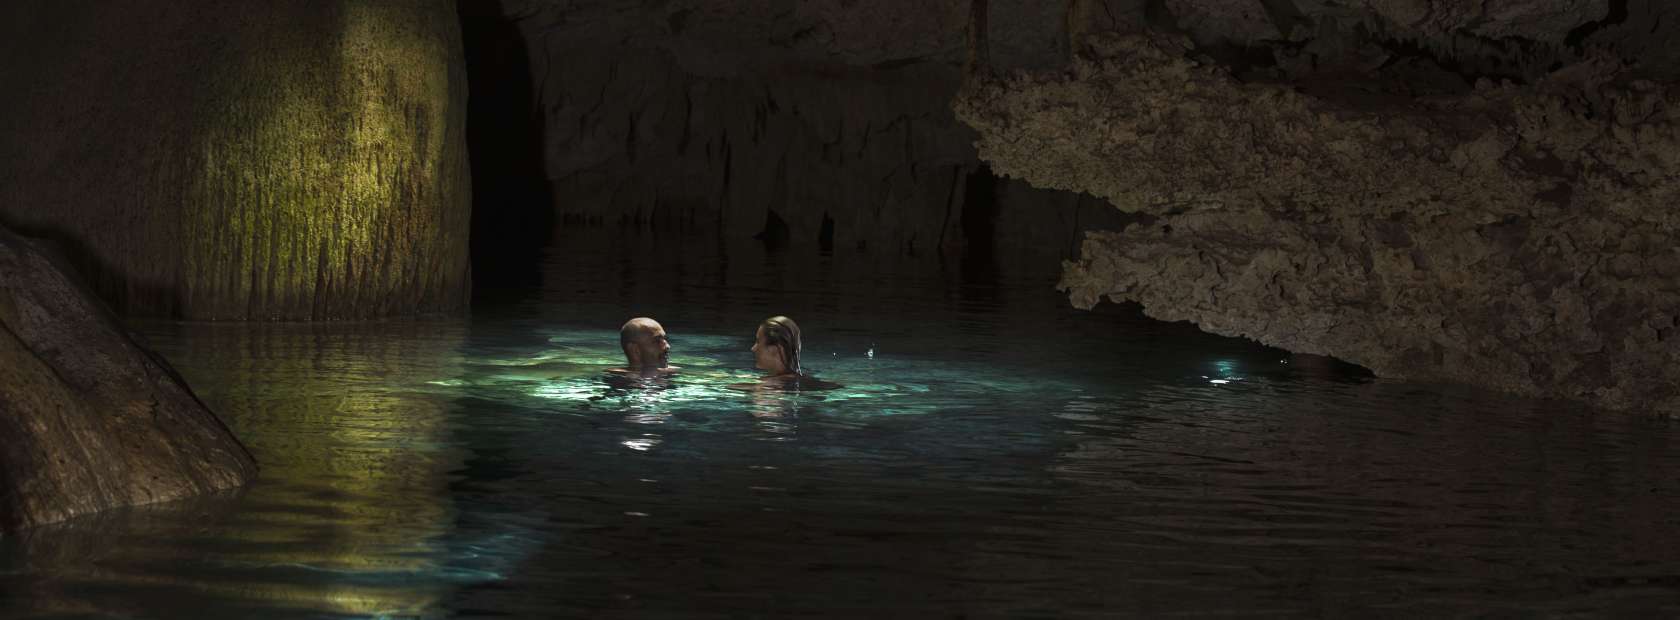 Couple in Cenote Grotto